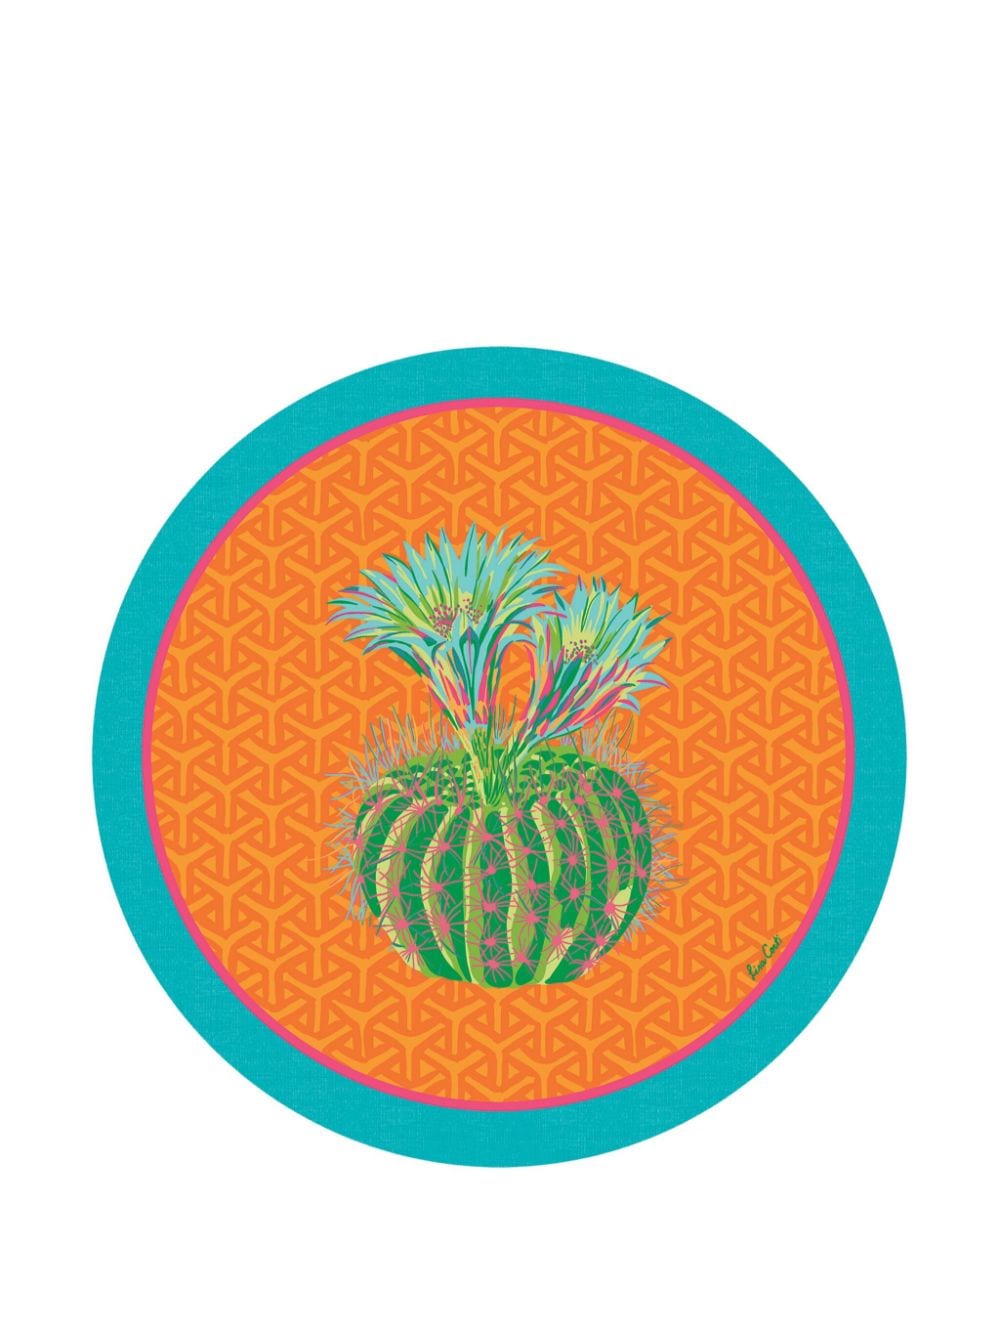 Lisa Corti Masonite Cactus circular place mats (set of two) - Oranje